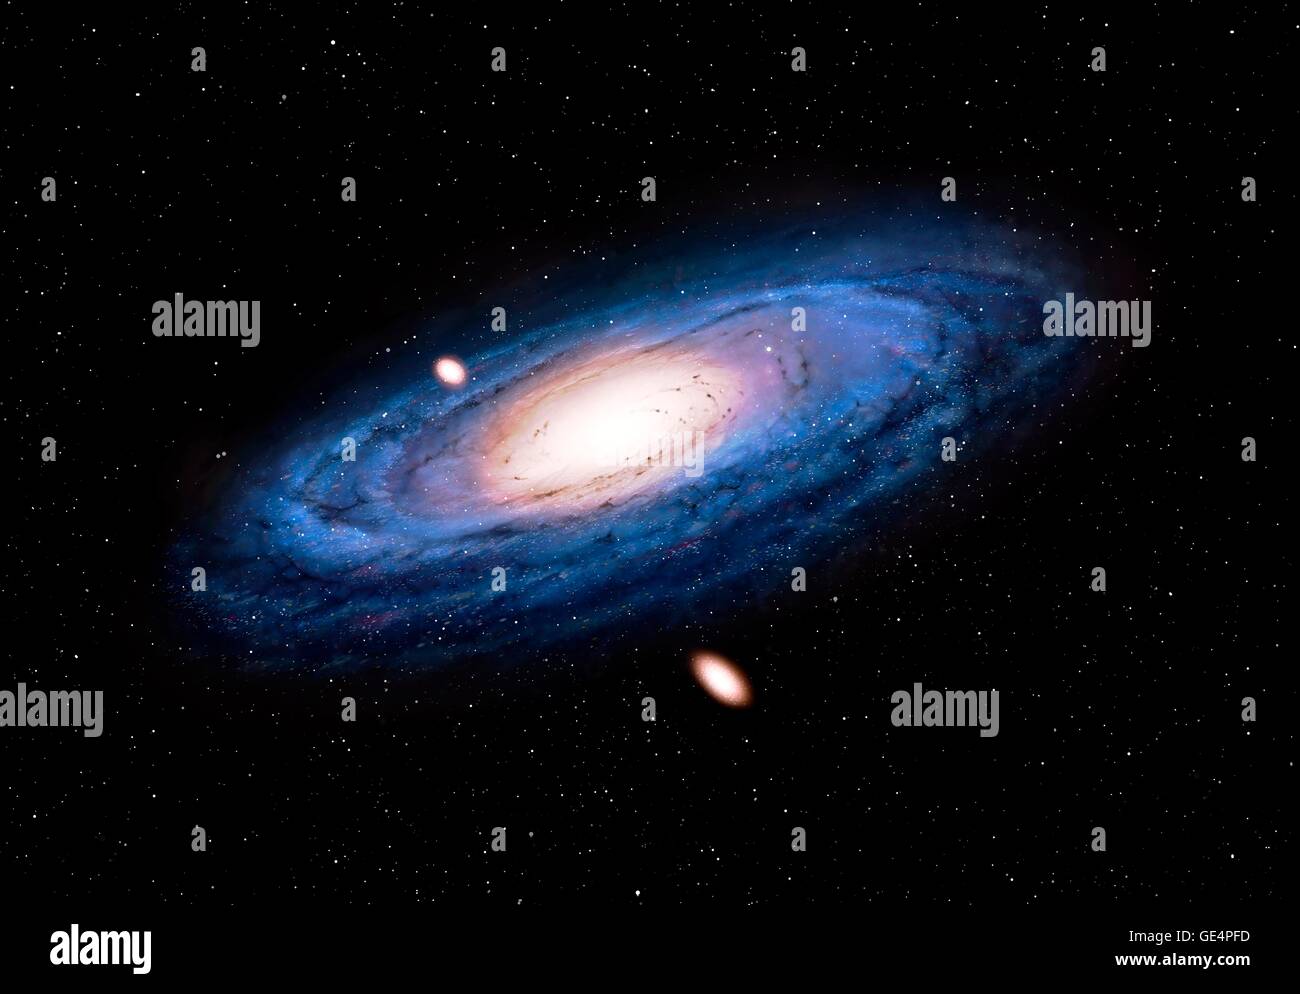 Galaxia Andrómeda, obra de arte digital. Andrómeda es la galaxia grande más cercana a la nuestra. Mide alrededor de 140, 000 años luz de diámetro y está situado a 2,5 millones de años luz de distancia en la constelación del mismo nombre. Dos de sus satélites galaxias enanas, M32 y M110, también se muestra. Foto de stock